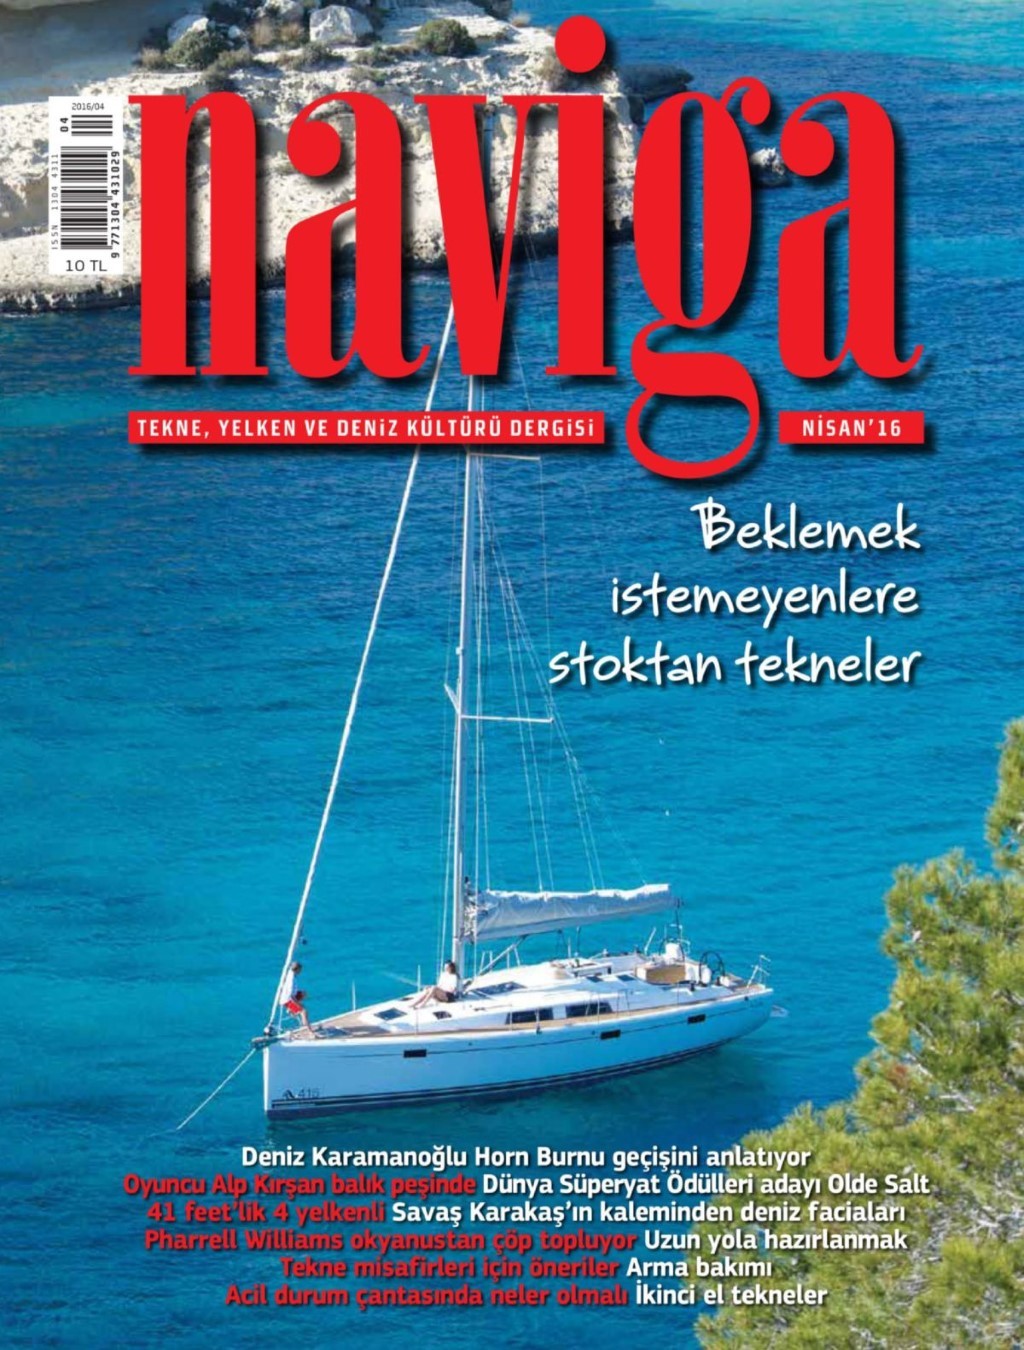 Naviga Nisan E-dergi indir Sandalca.com